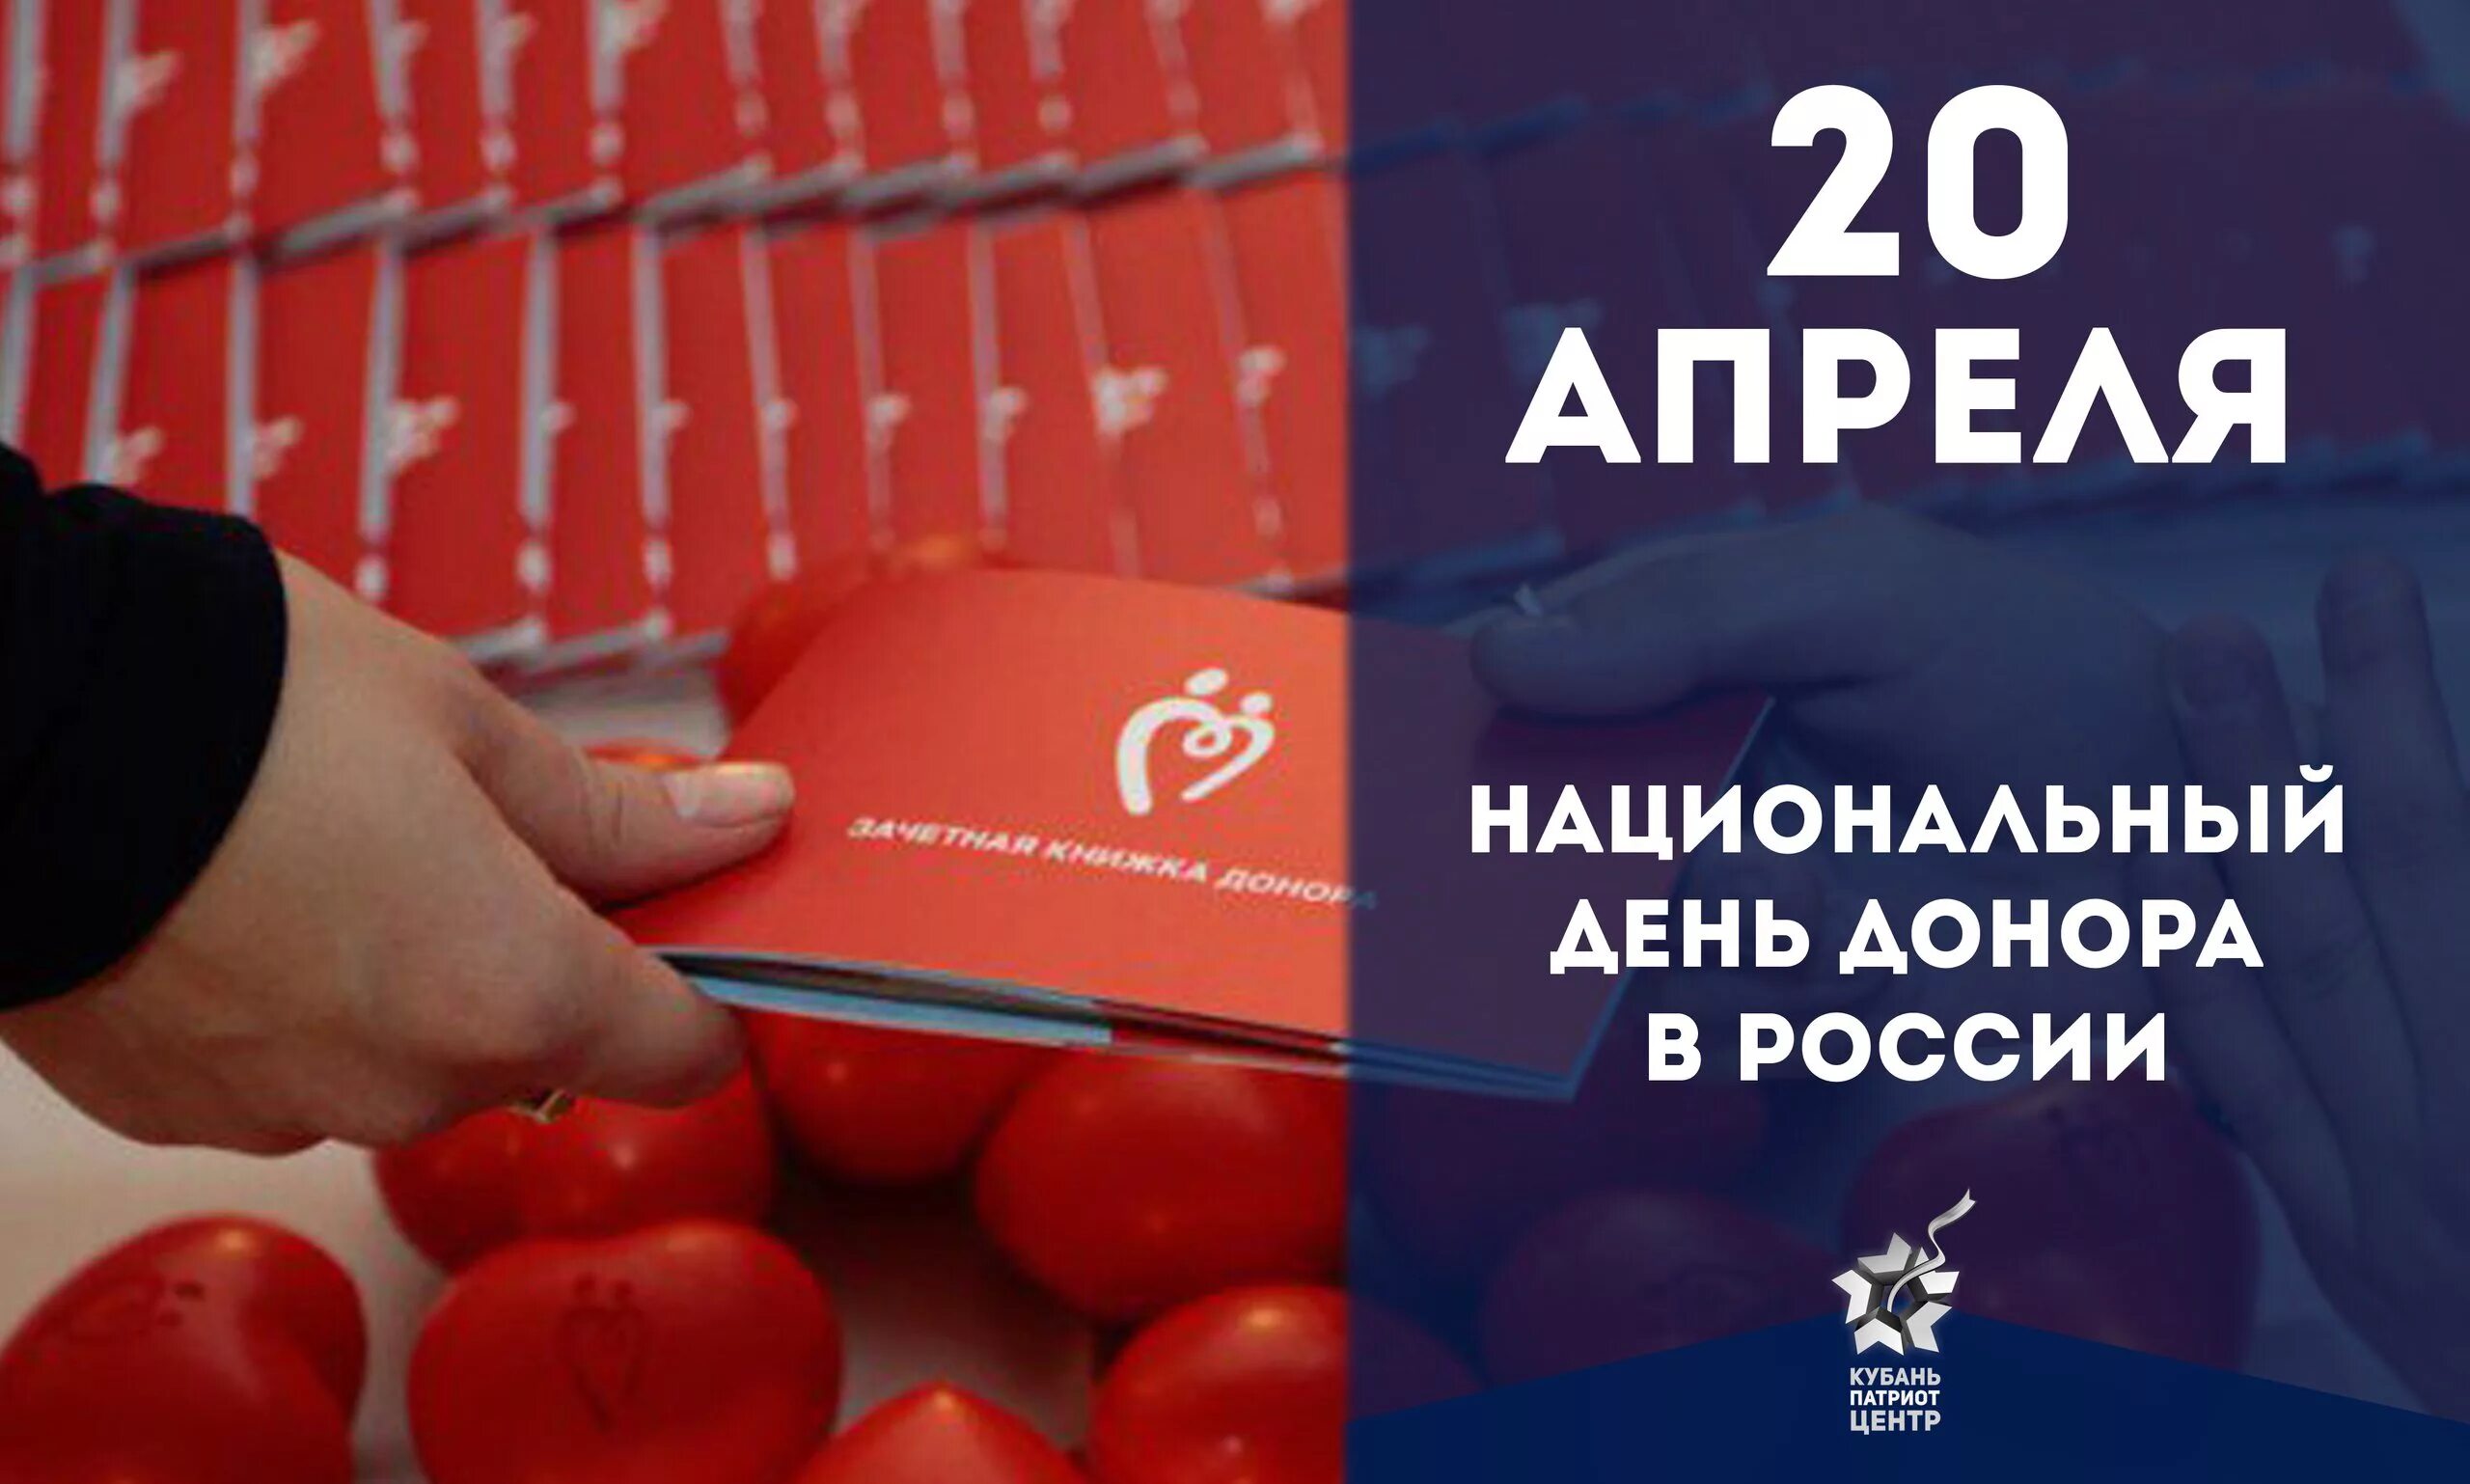 Национальный день донора в россии. Национальный день донора. 20 Апреля день донора. Национальный день донора крови в России. Открытки с днём донора 20 апреля.